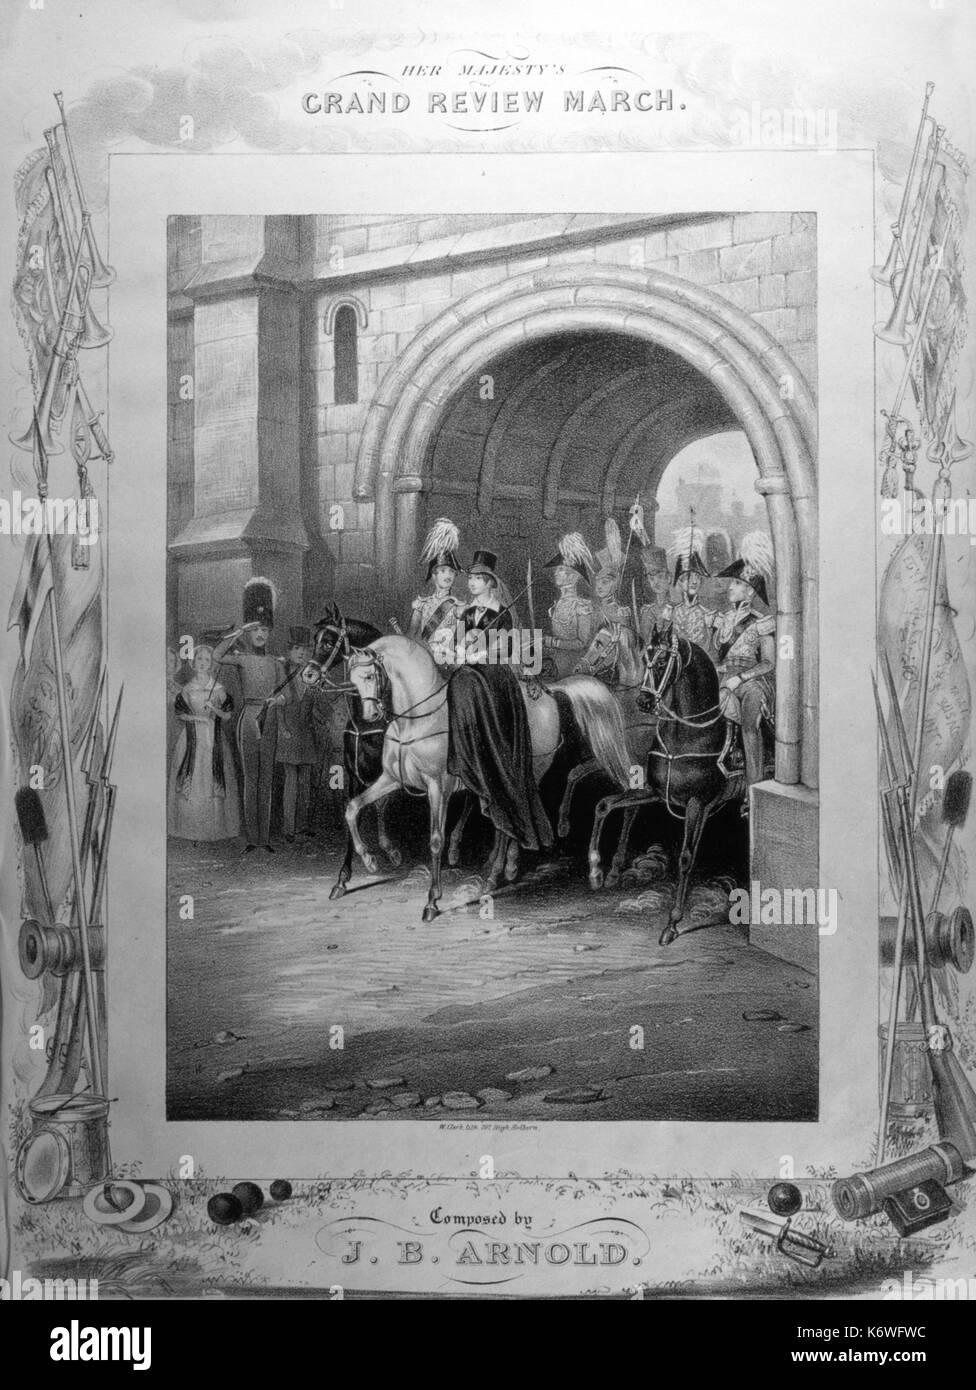 VICTORIA & ALBERT - Grand Review März Abdeckung von Score, c 1840, Victoria and Albert, reiten durch Tor auf dem Pferd. Musik von J B Arnold Stockfoto